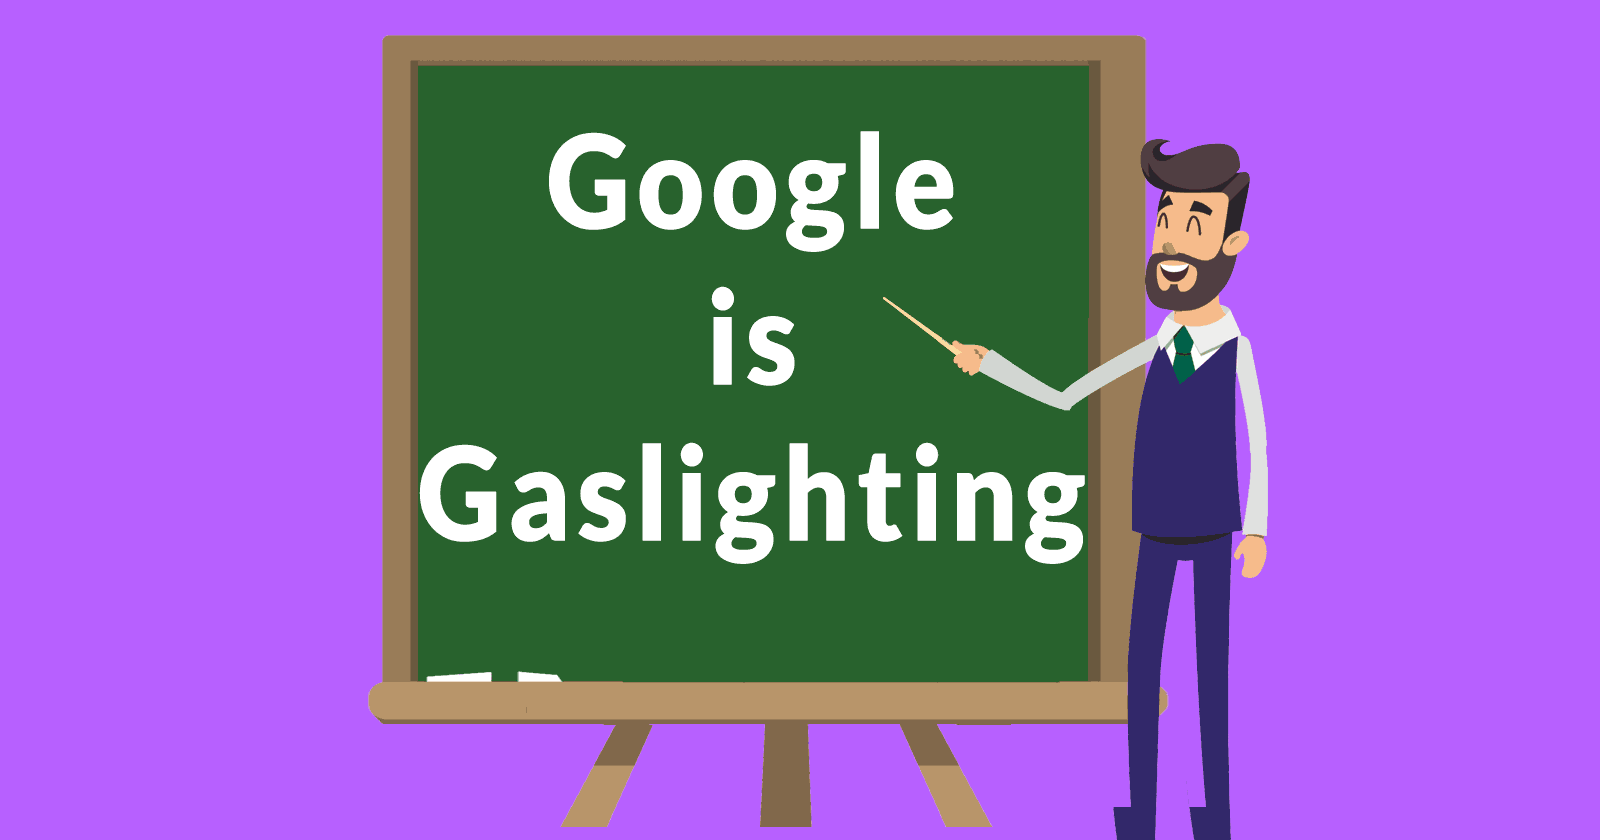 Google is gaslighting